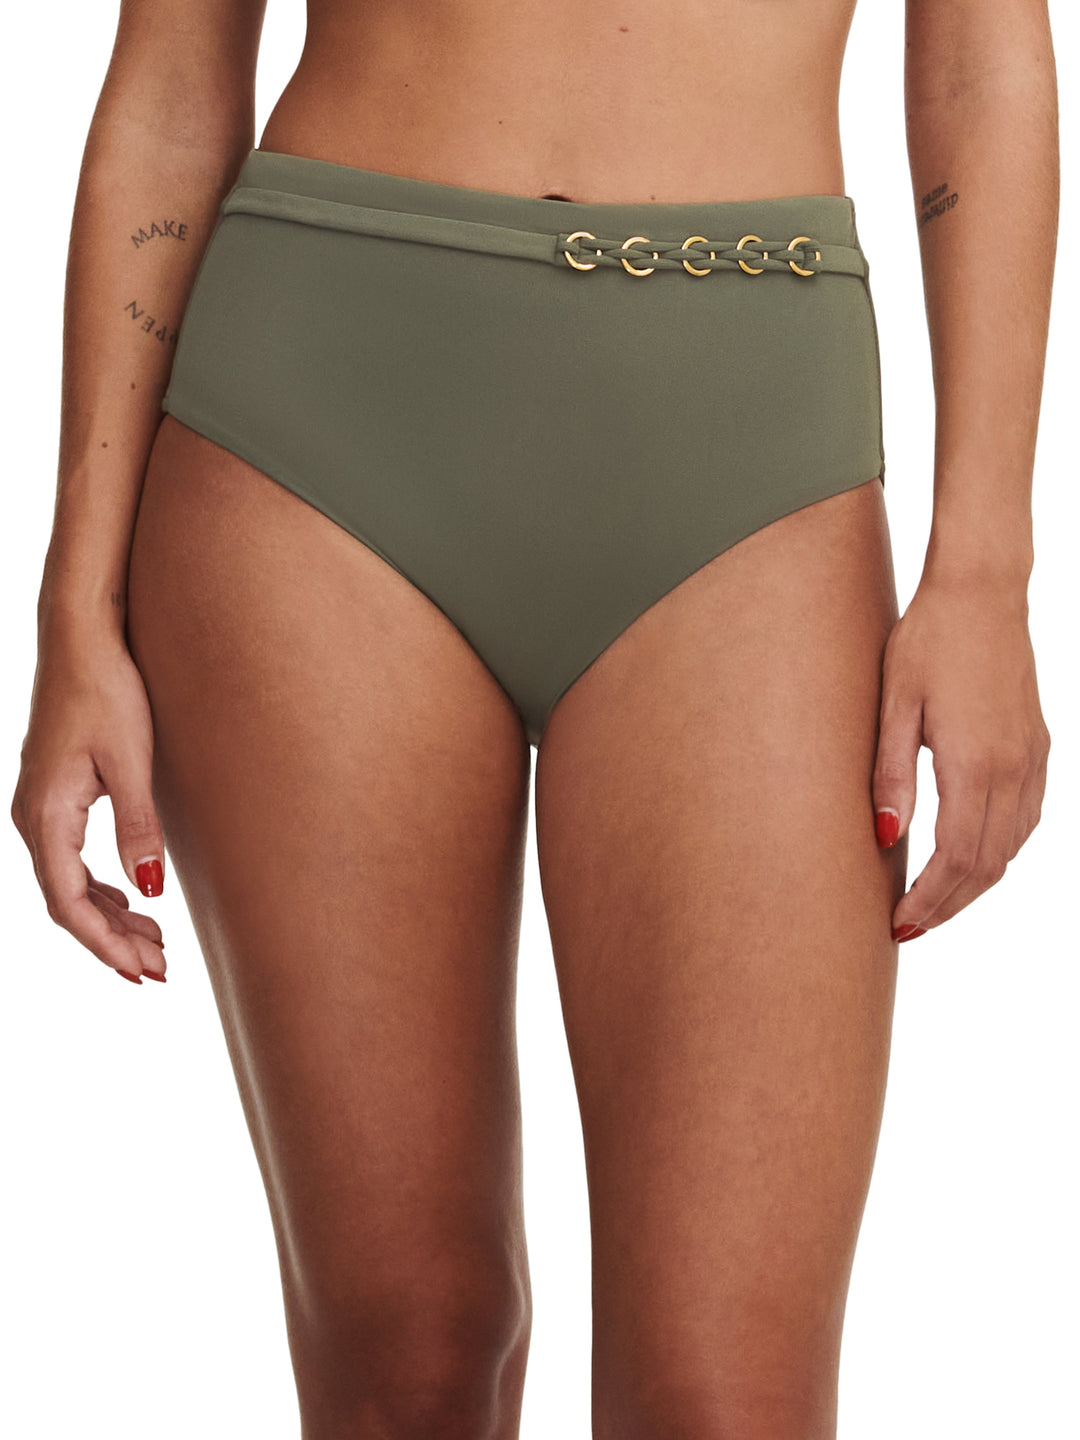 Chantelle Costumi da bagno Slip bikini intero emblema - Slip bikini intero verde kaki Chantelle